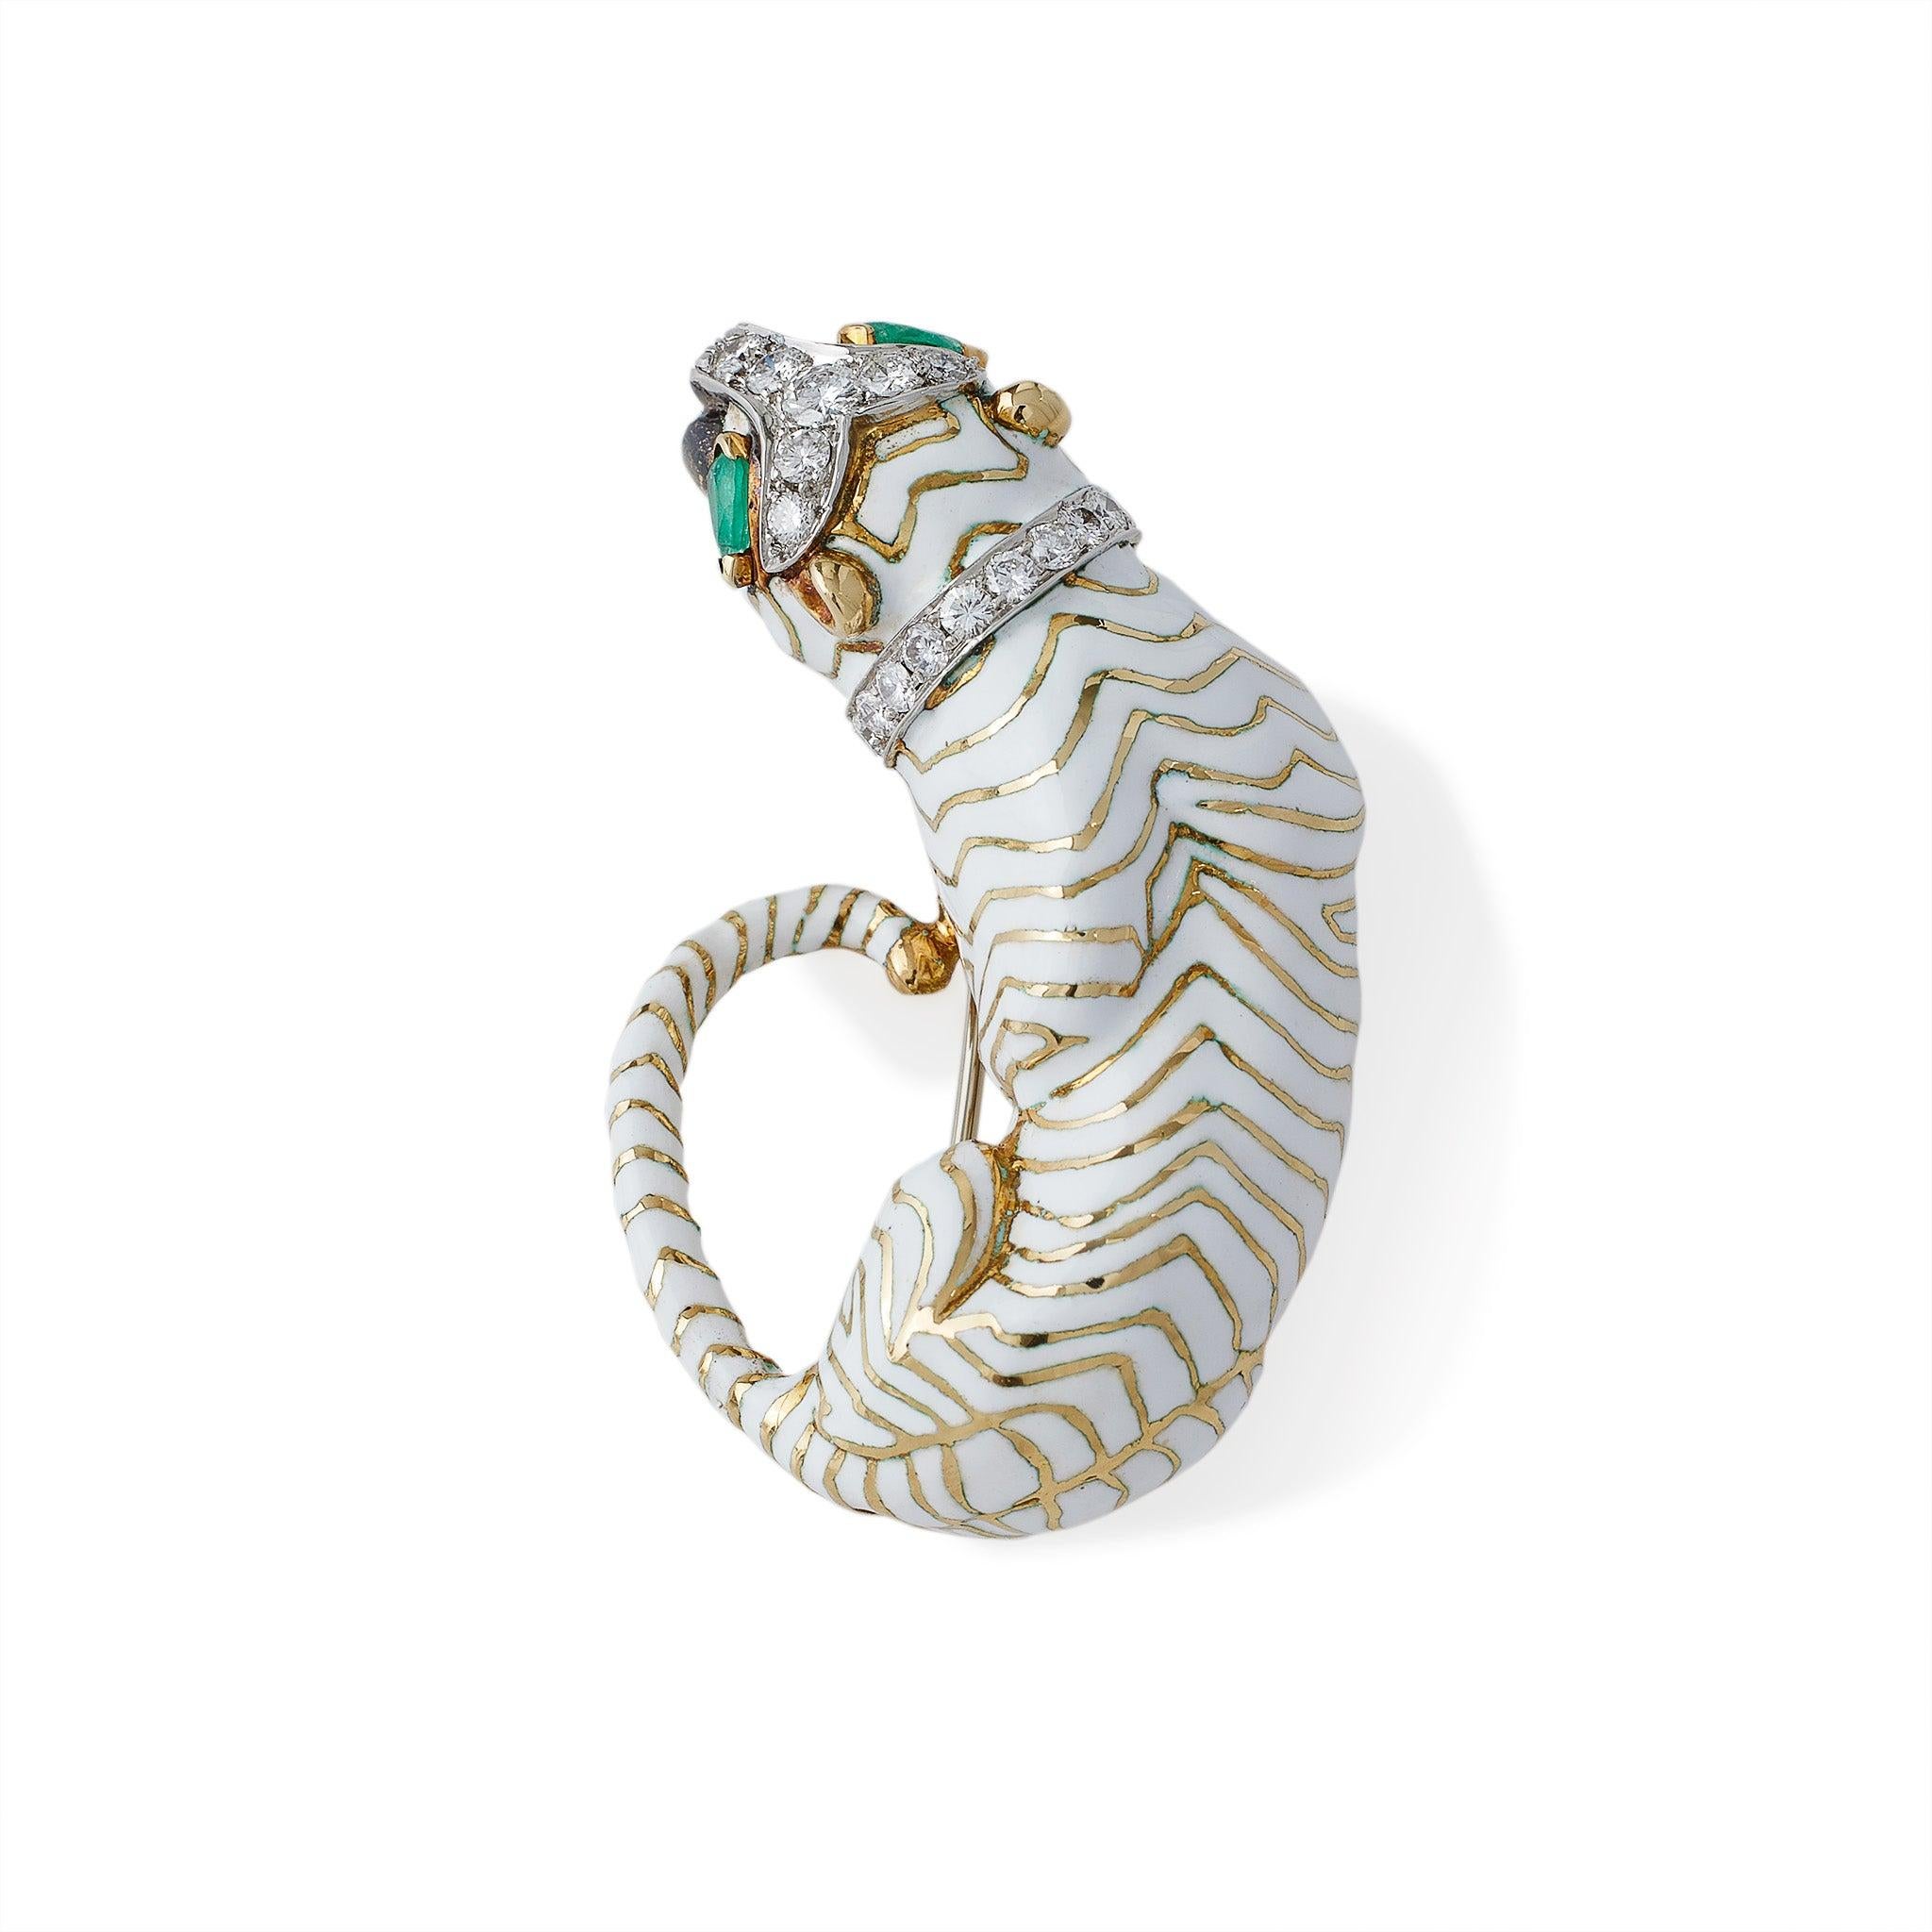 Conçue par David Webb en 1965, cette broche tigre en or 18K et émail blanc est sertie de diamants et d'émeraudes. Le tigre en or 18 carats, avec ses bandes en émail champlevé blanc, ses yeux en émeraude cabochon en forme de poire, sa queue et son